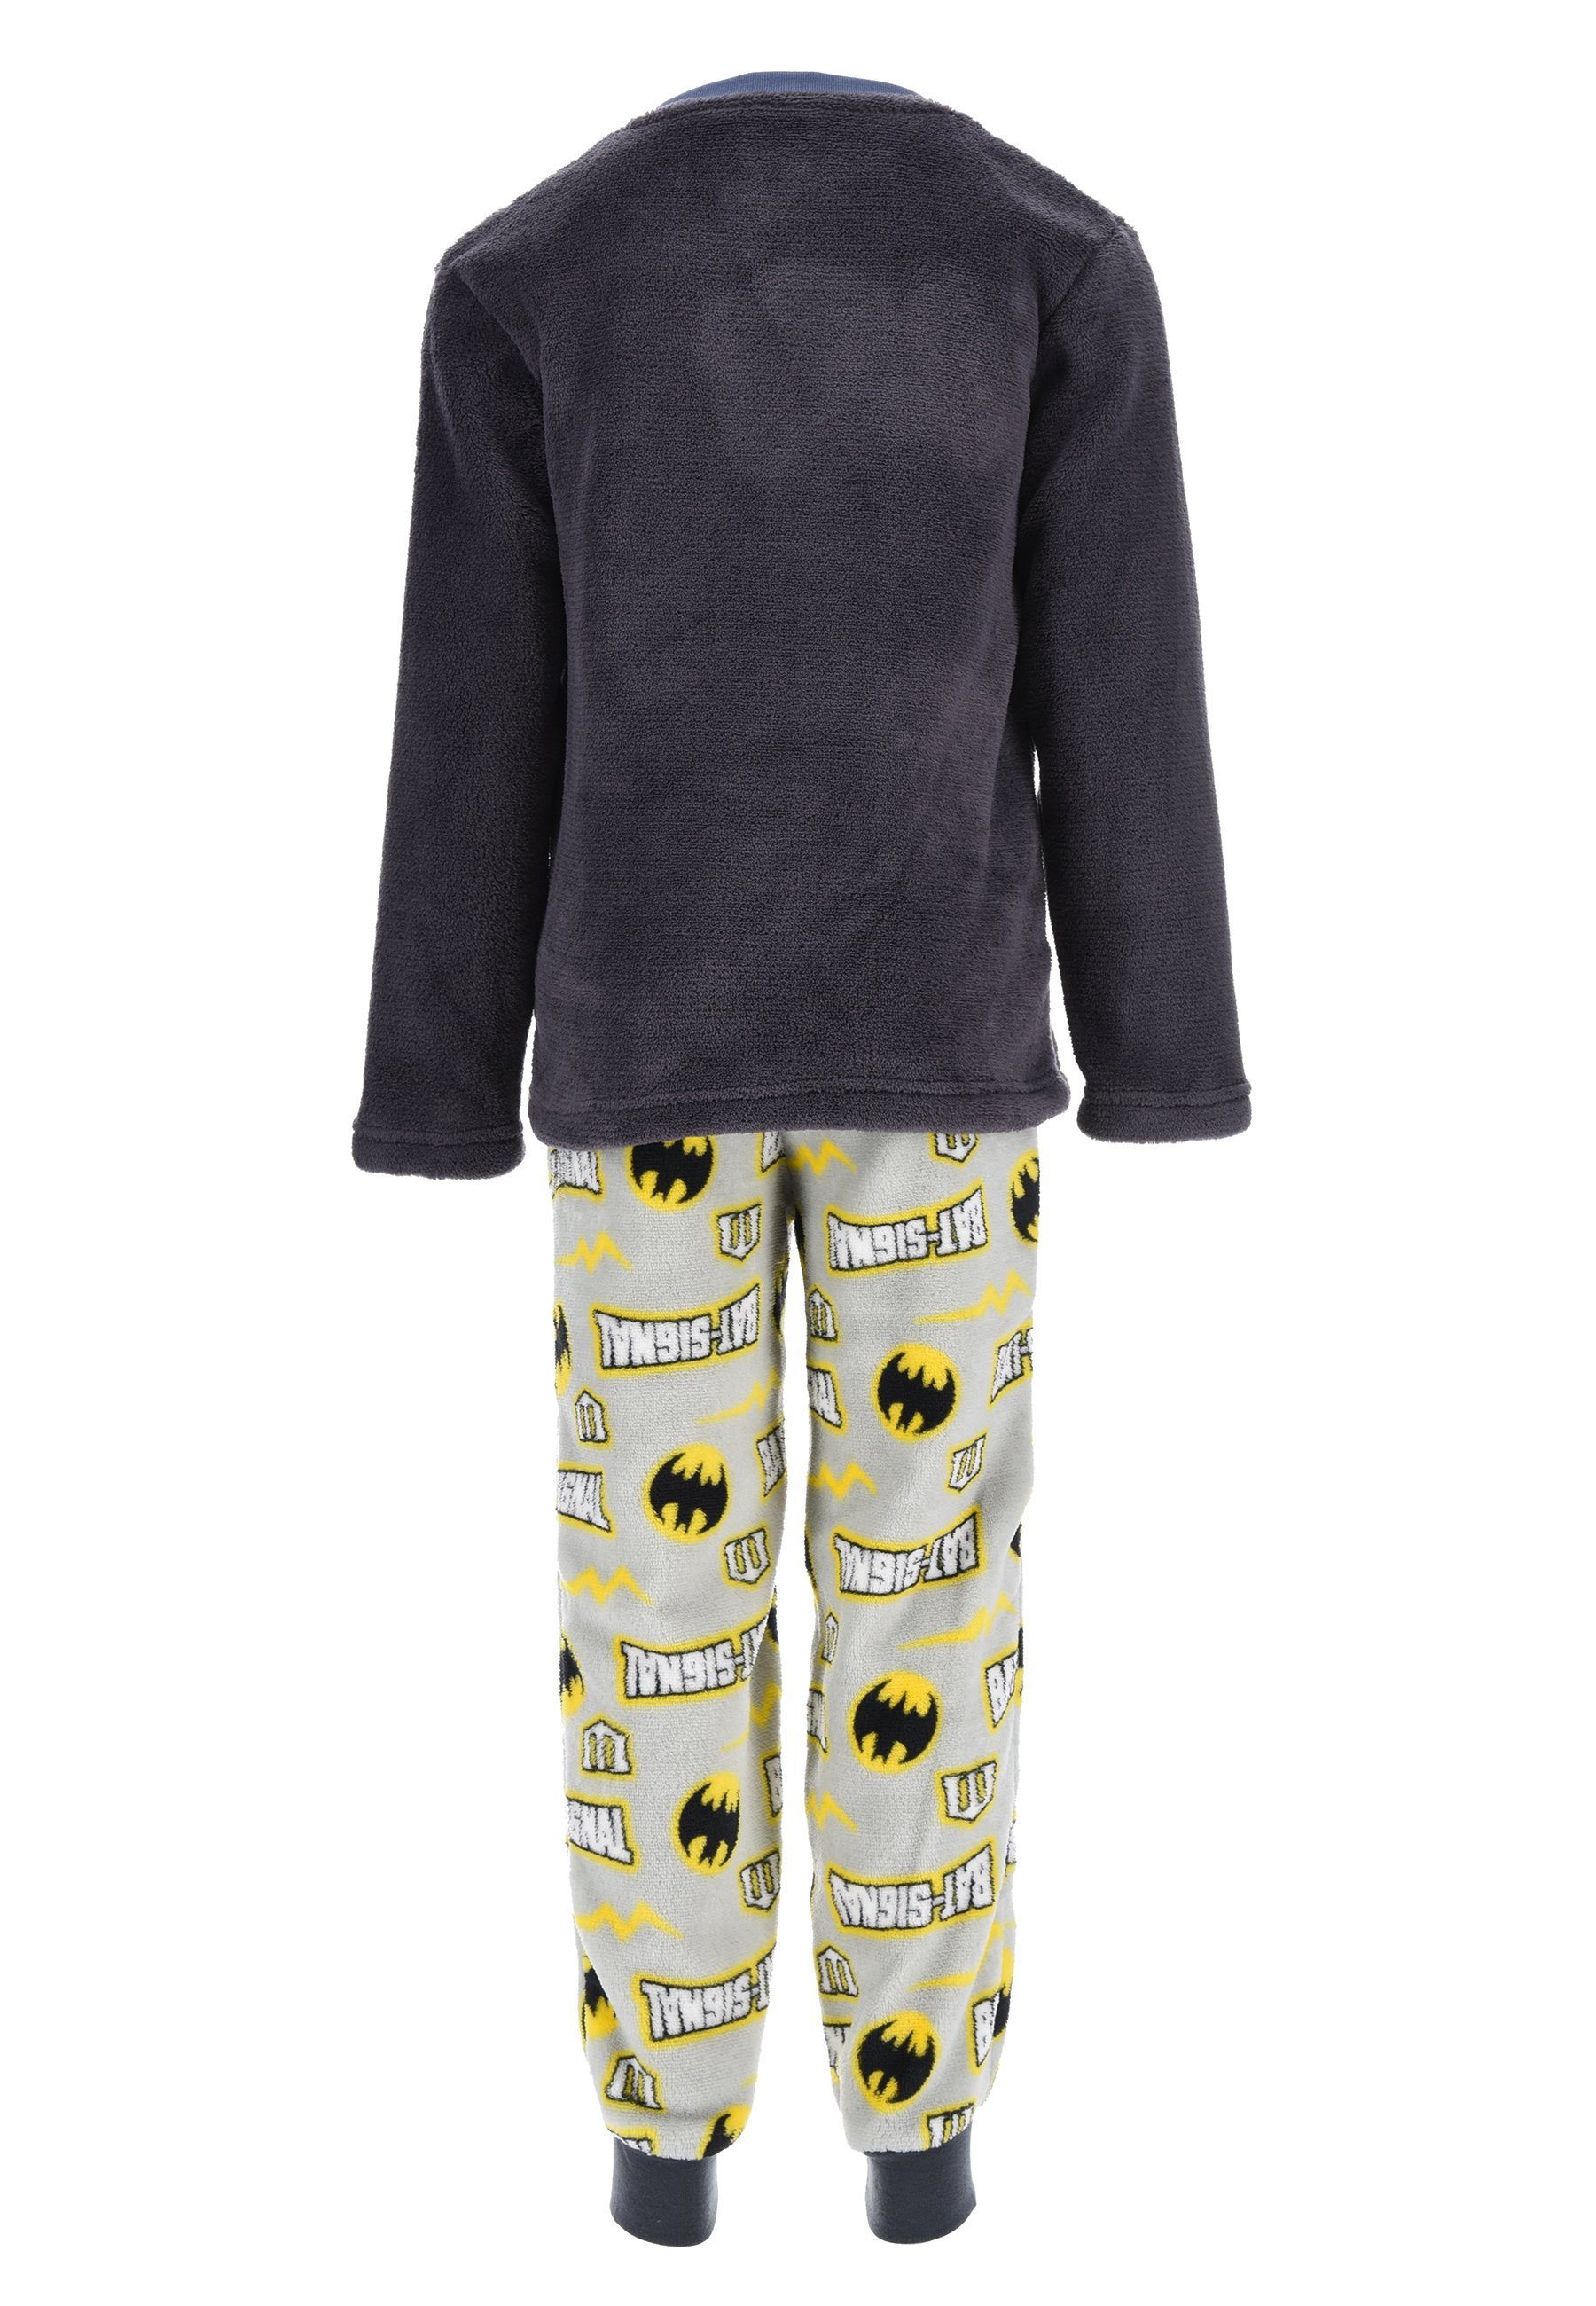 tlg) langarm (2 Nachtwäsche Schlafanzug Pyjama ONOMATO! Kinder Bat-Signal Jungen Grau